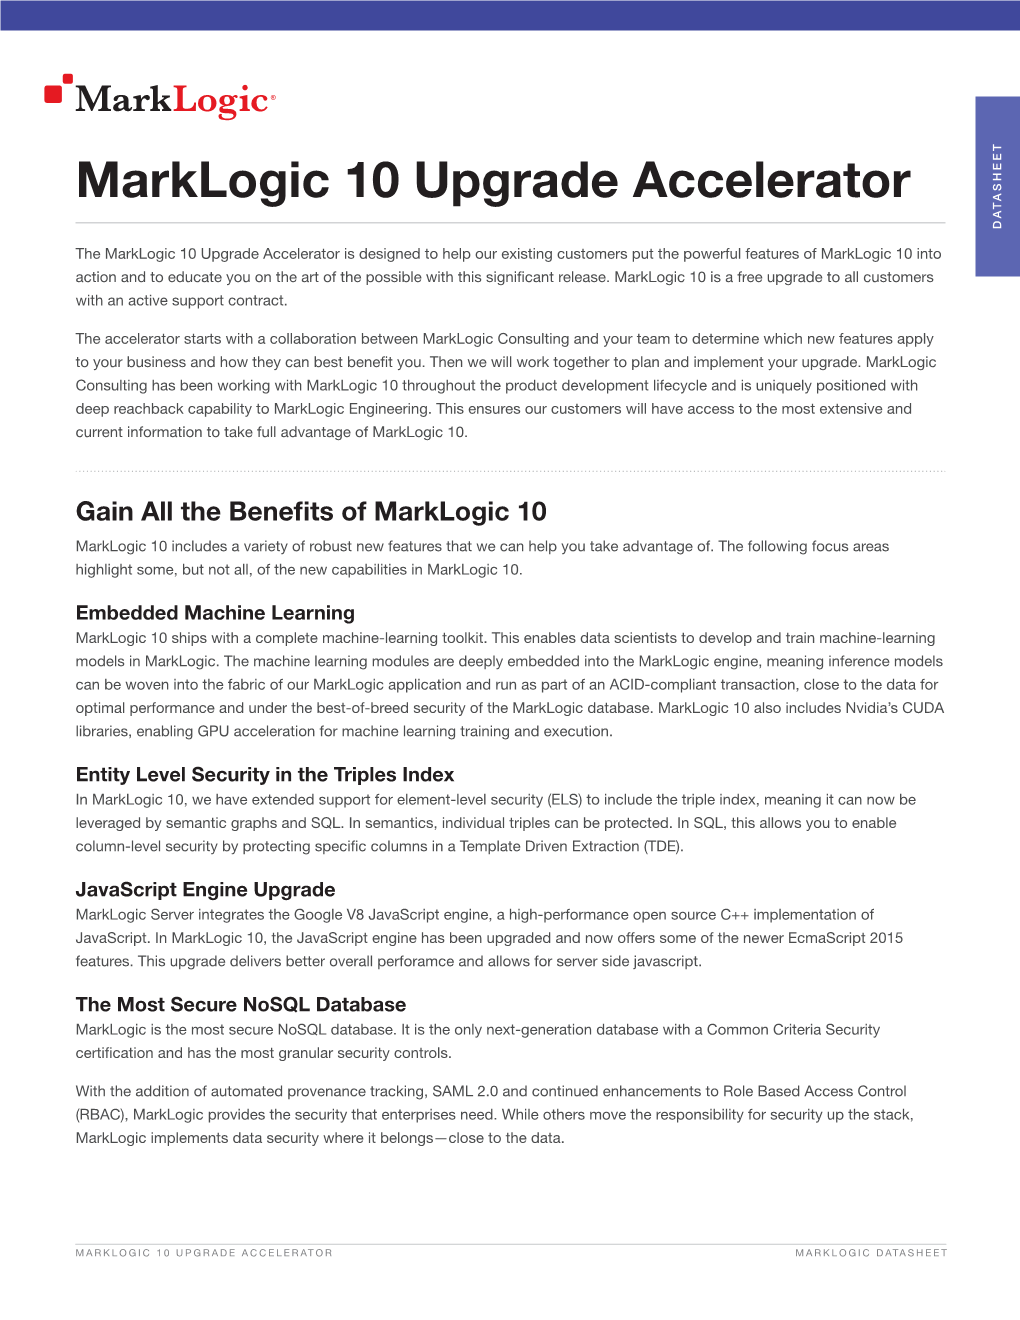 Marklogic 10 Upgrade Accelerator Datasheet